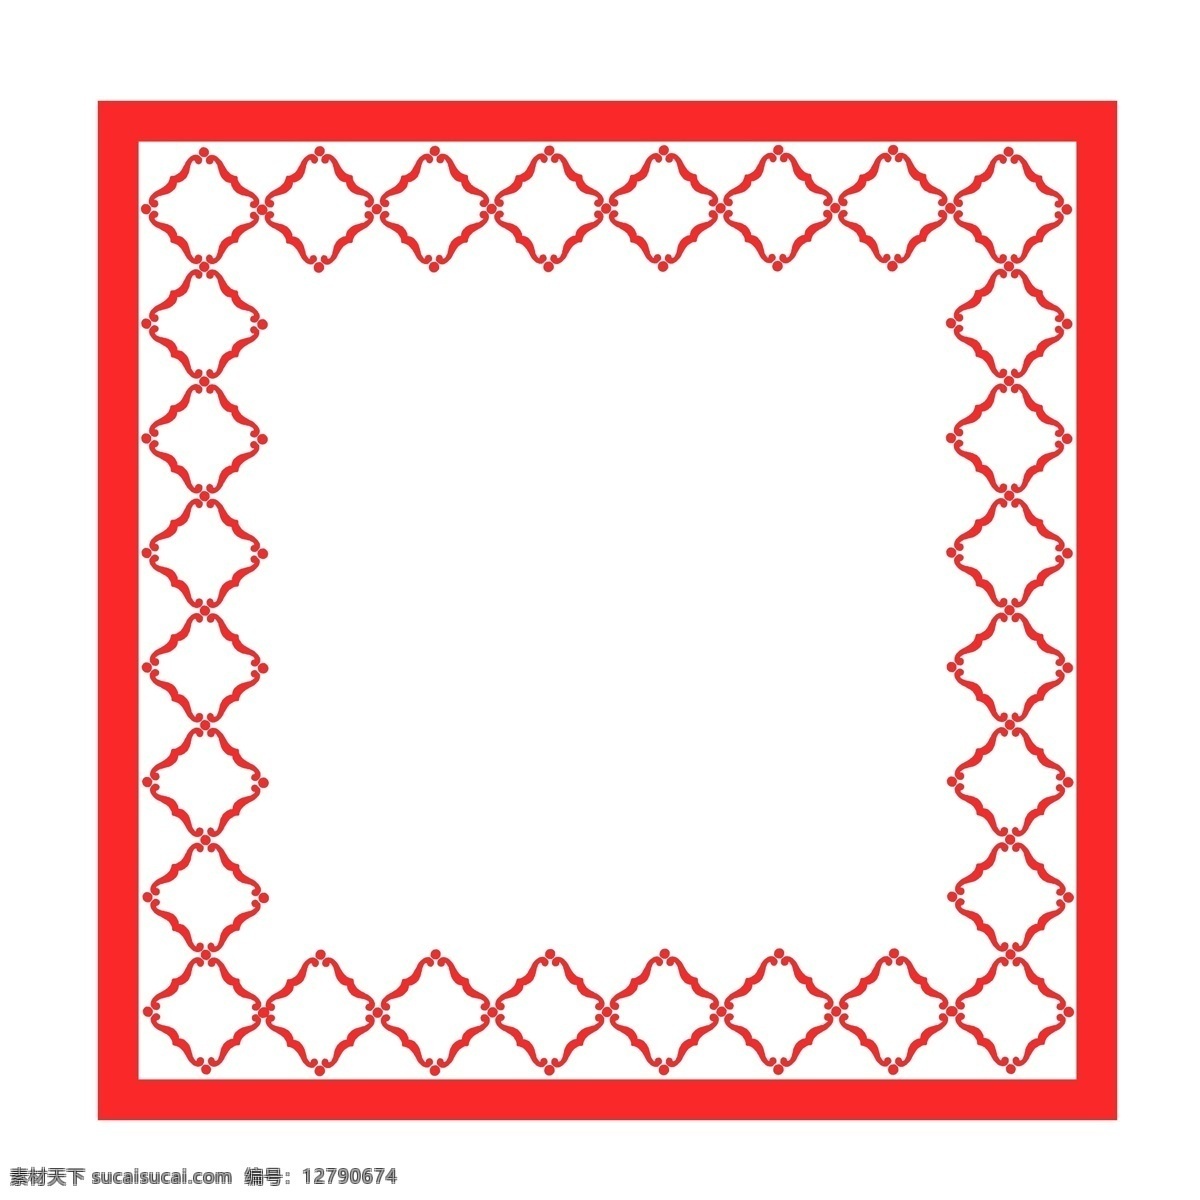 正方形 经典 大红 图 框 装饰 方形 边框 商务 封面 插图 简约 中国风 海报 黑色 简洁 大气